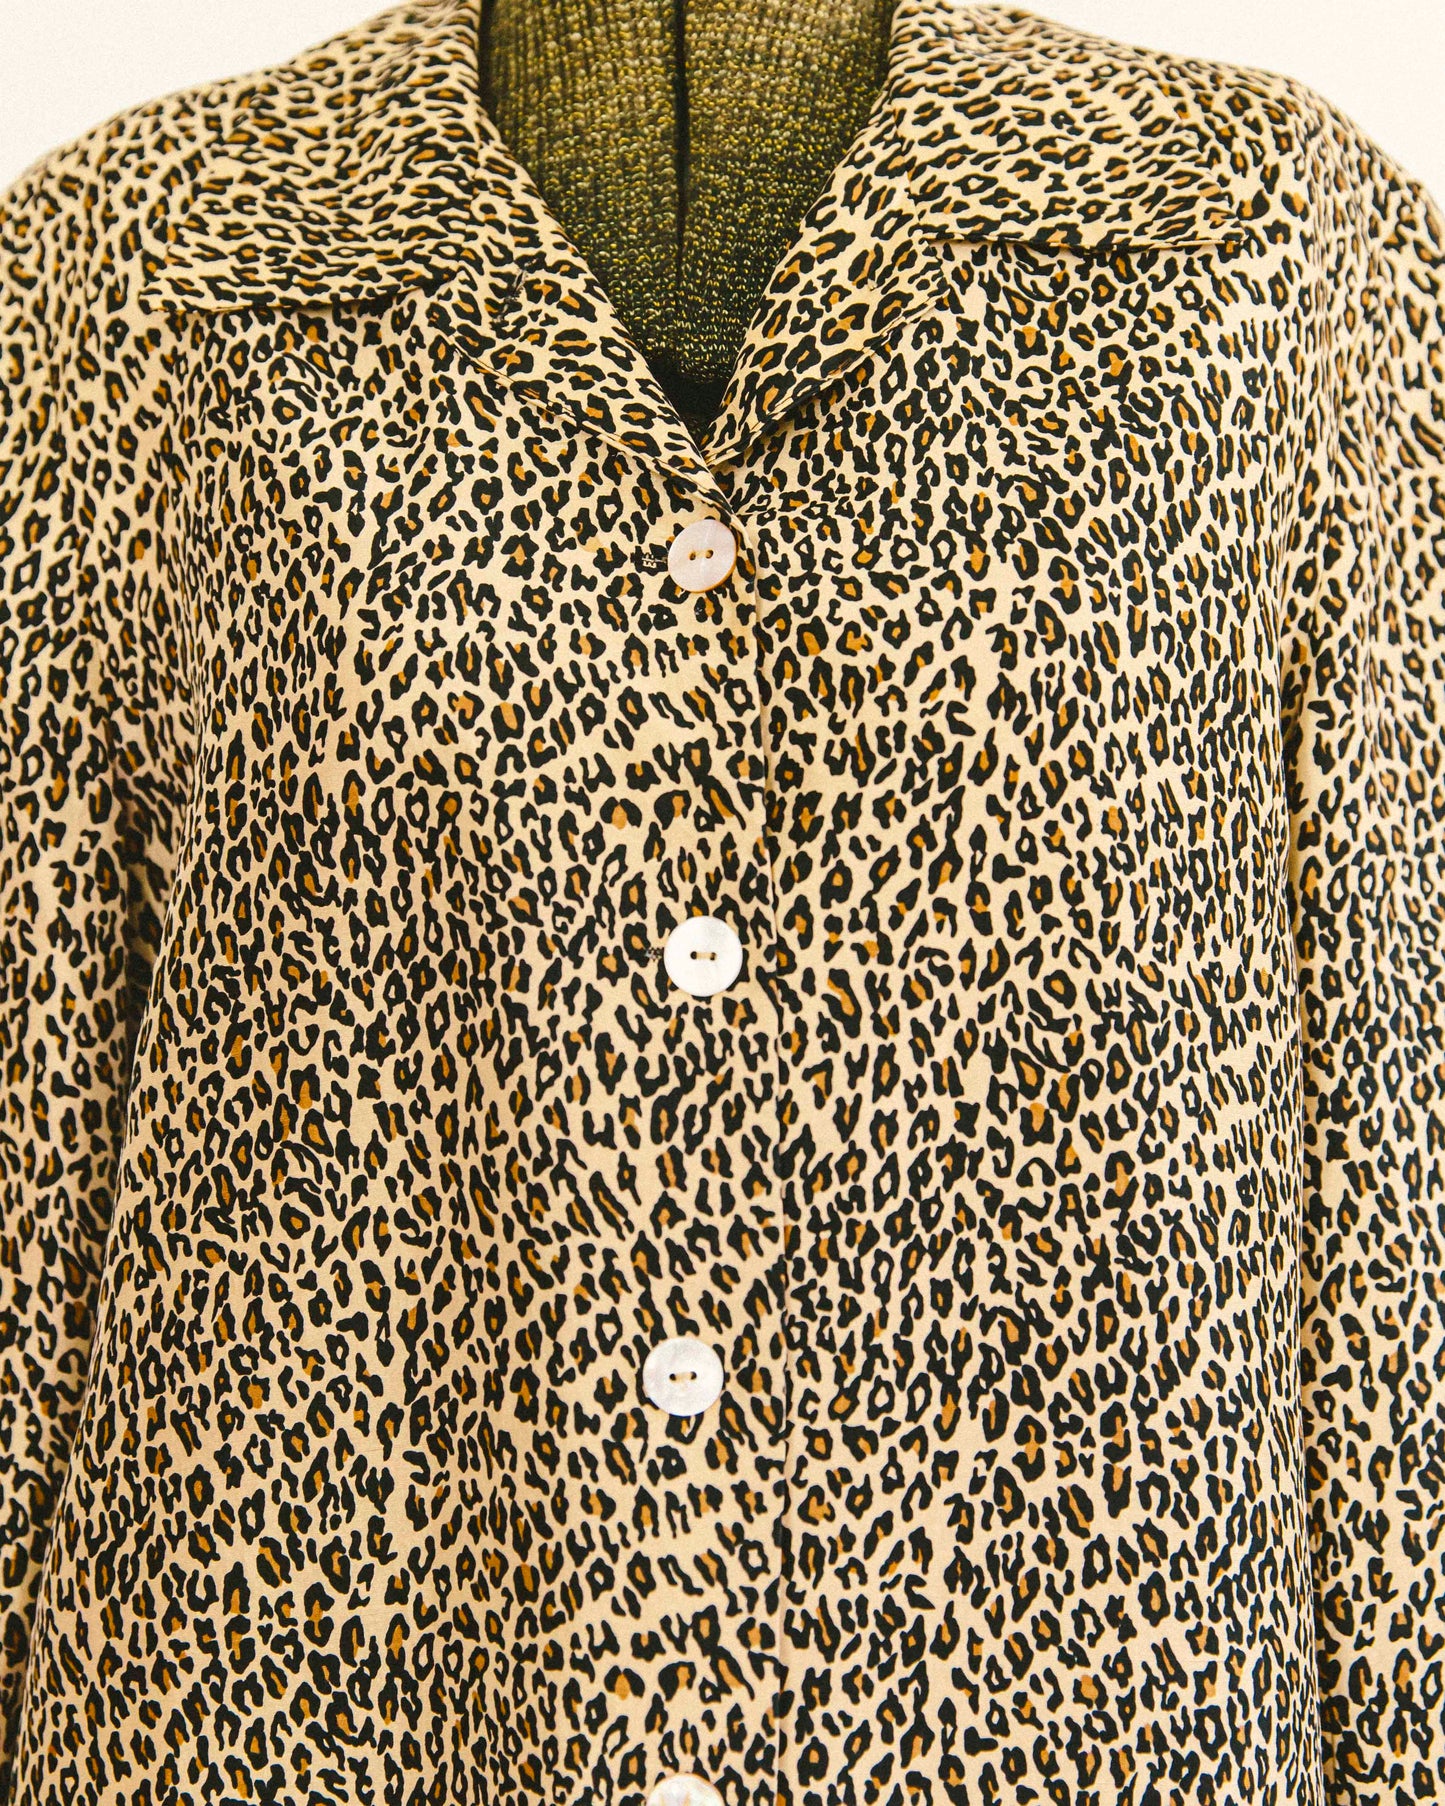 Silk Leopard Jacket